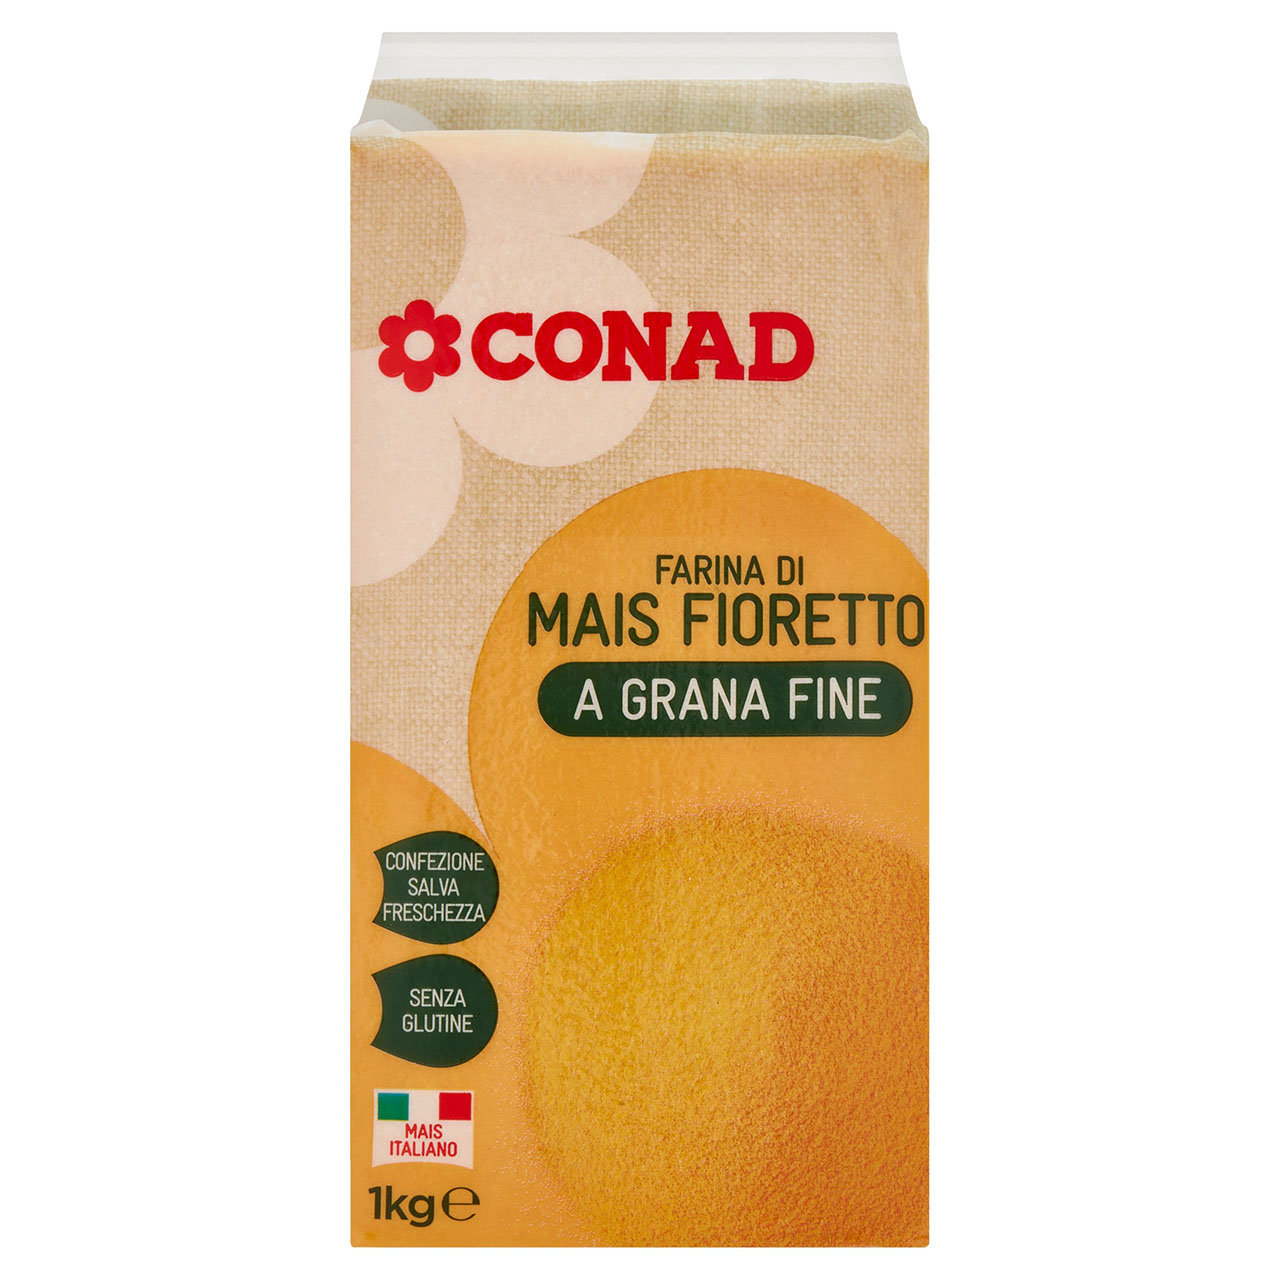 Farina di mais Fioretto a grana fine Conad online